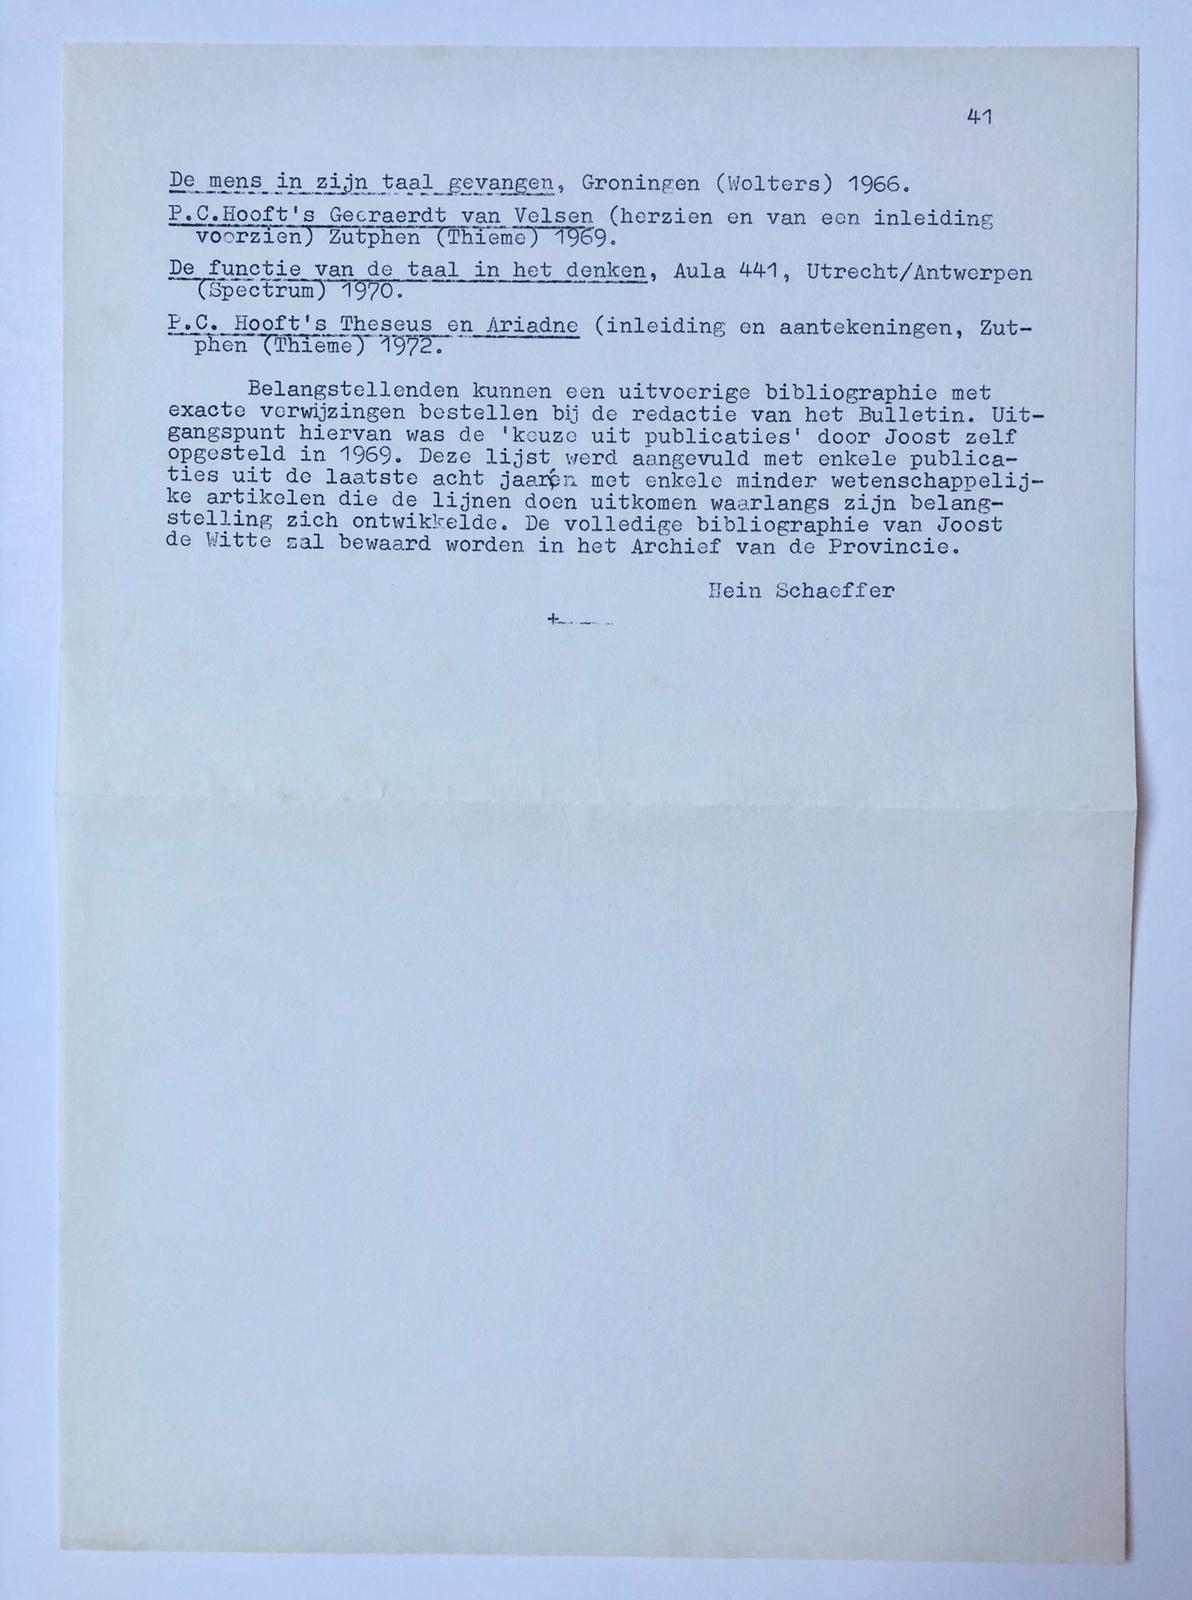 [In Memoriam 1977] ‘In memoriam pater Joost de Witte’, met bibliografie. 5 pag. uit Bulletin Dominicanen 1977, door Hein Schaeffer. Gestencild.